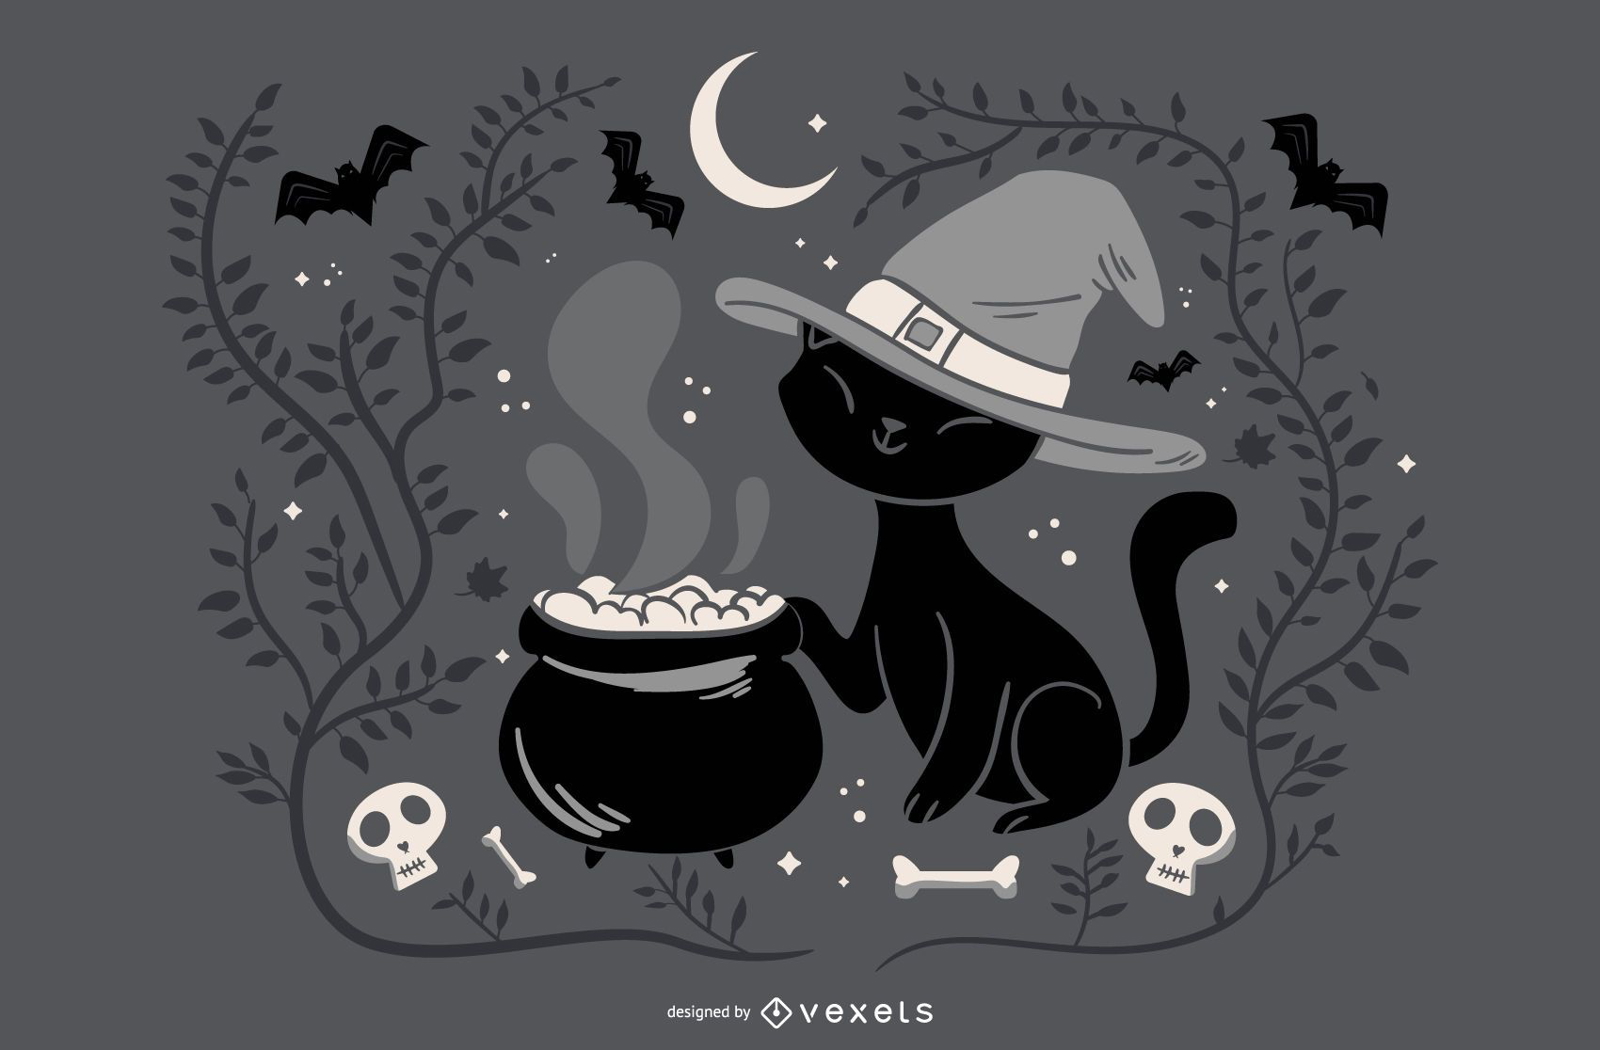 Hexenkatze Halloween Illustration